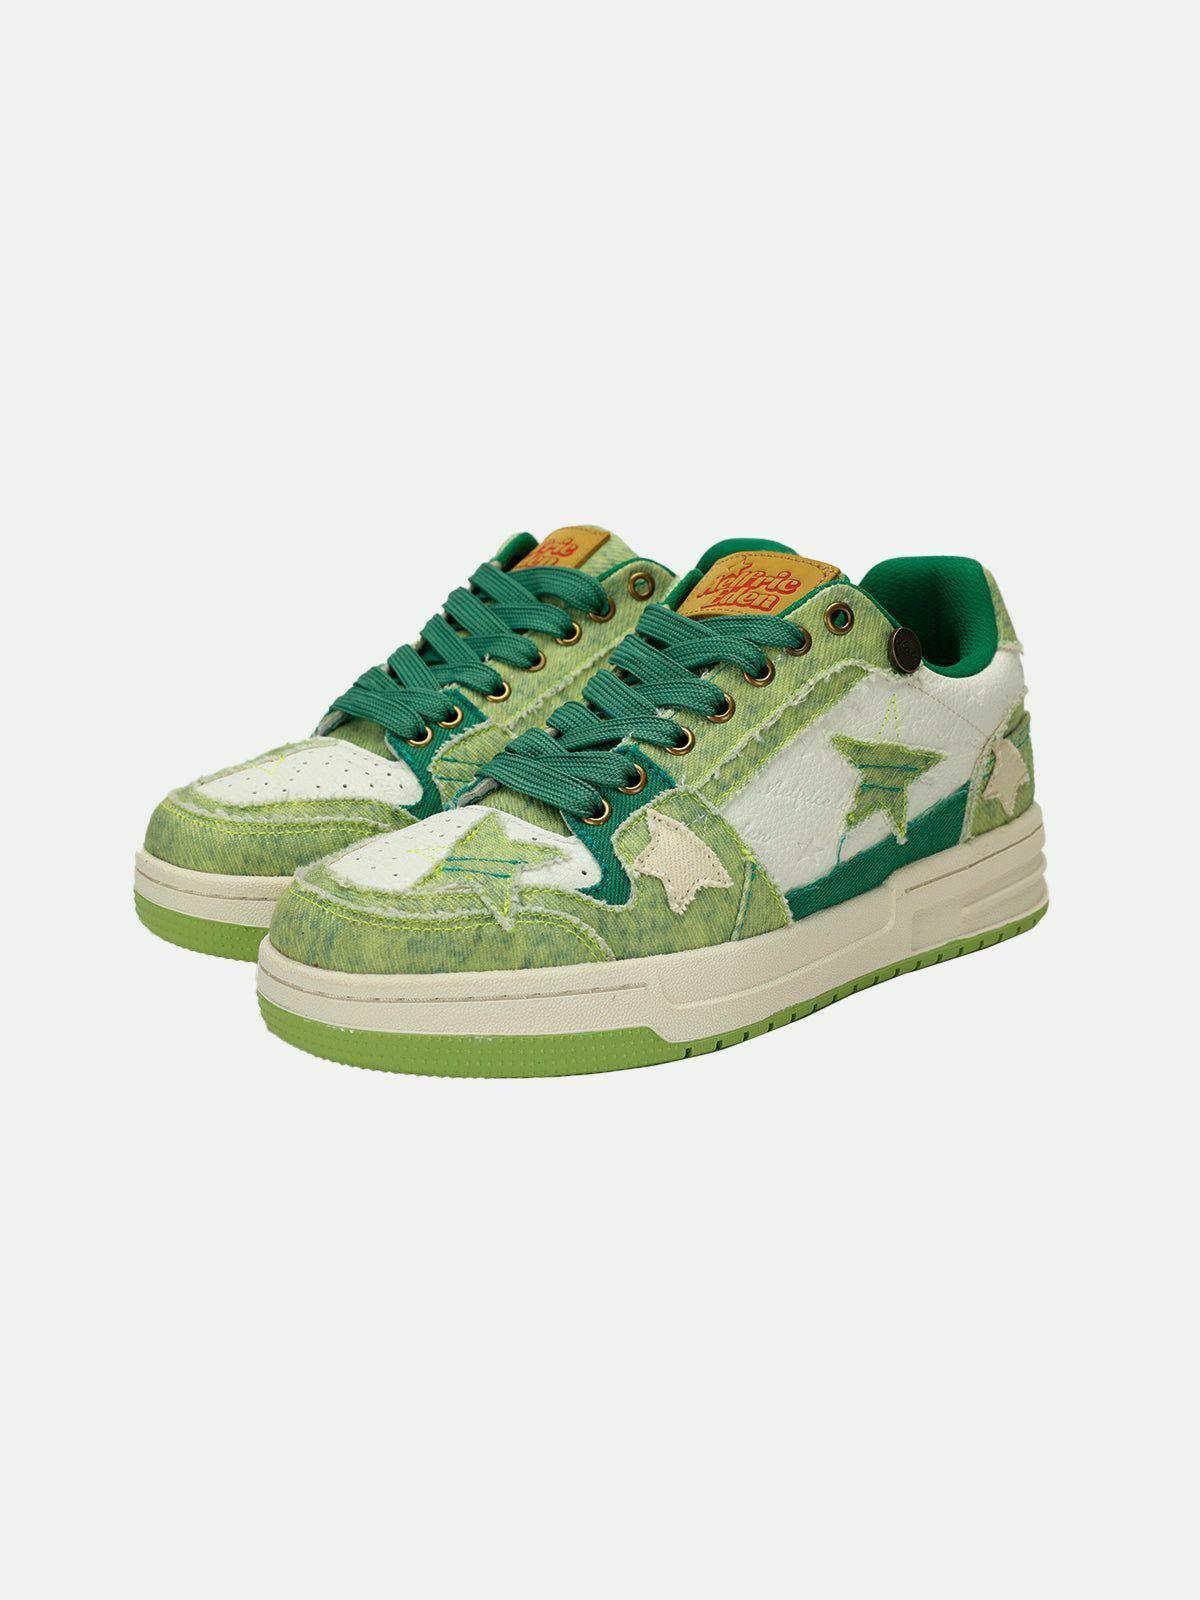 retro starryclimb avocado skate shoes   urban chic design 8247